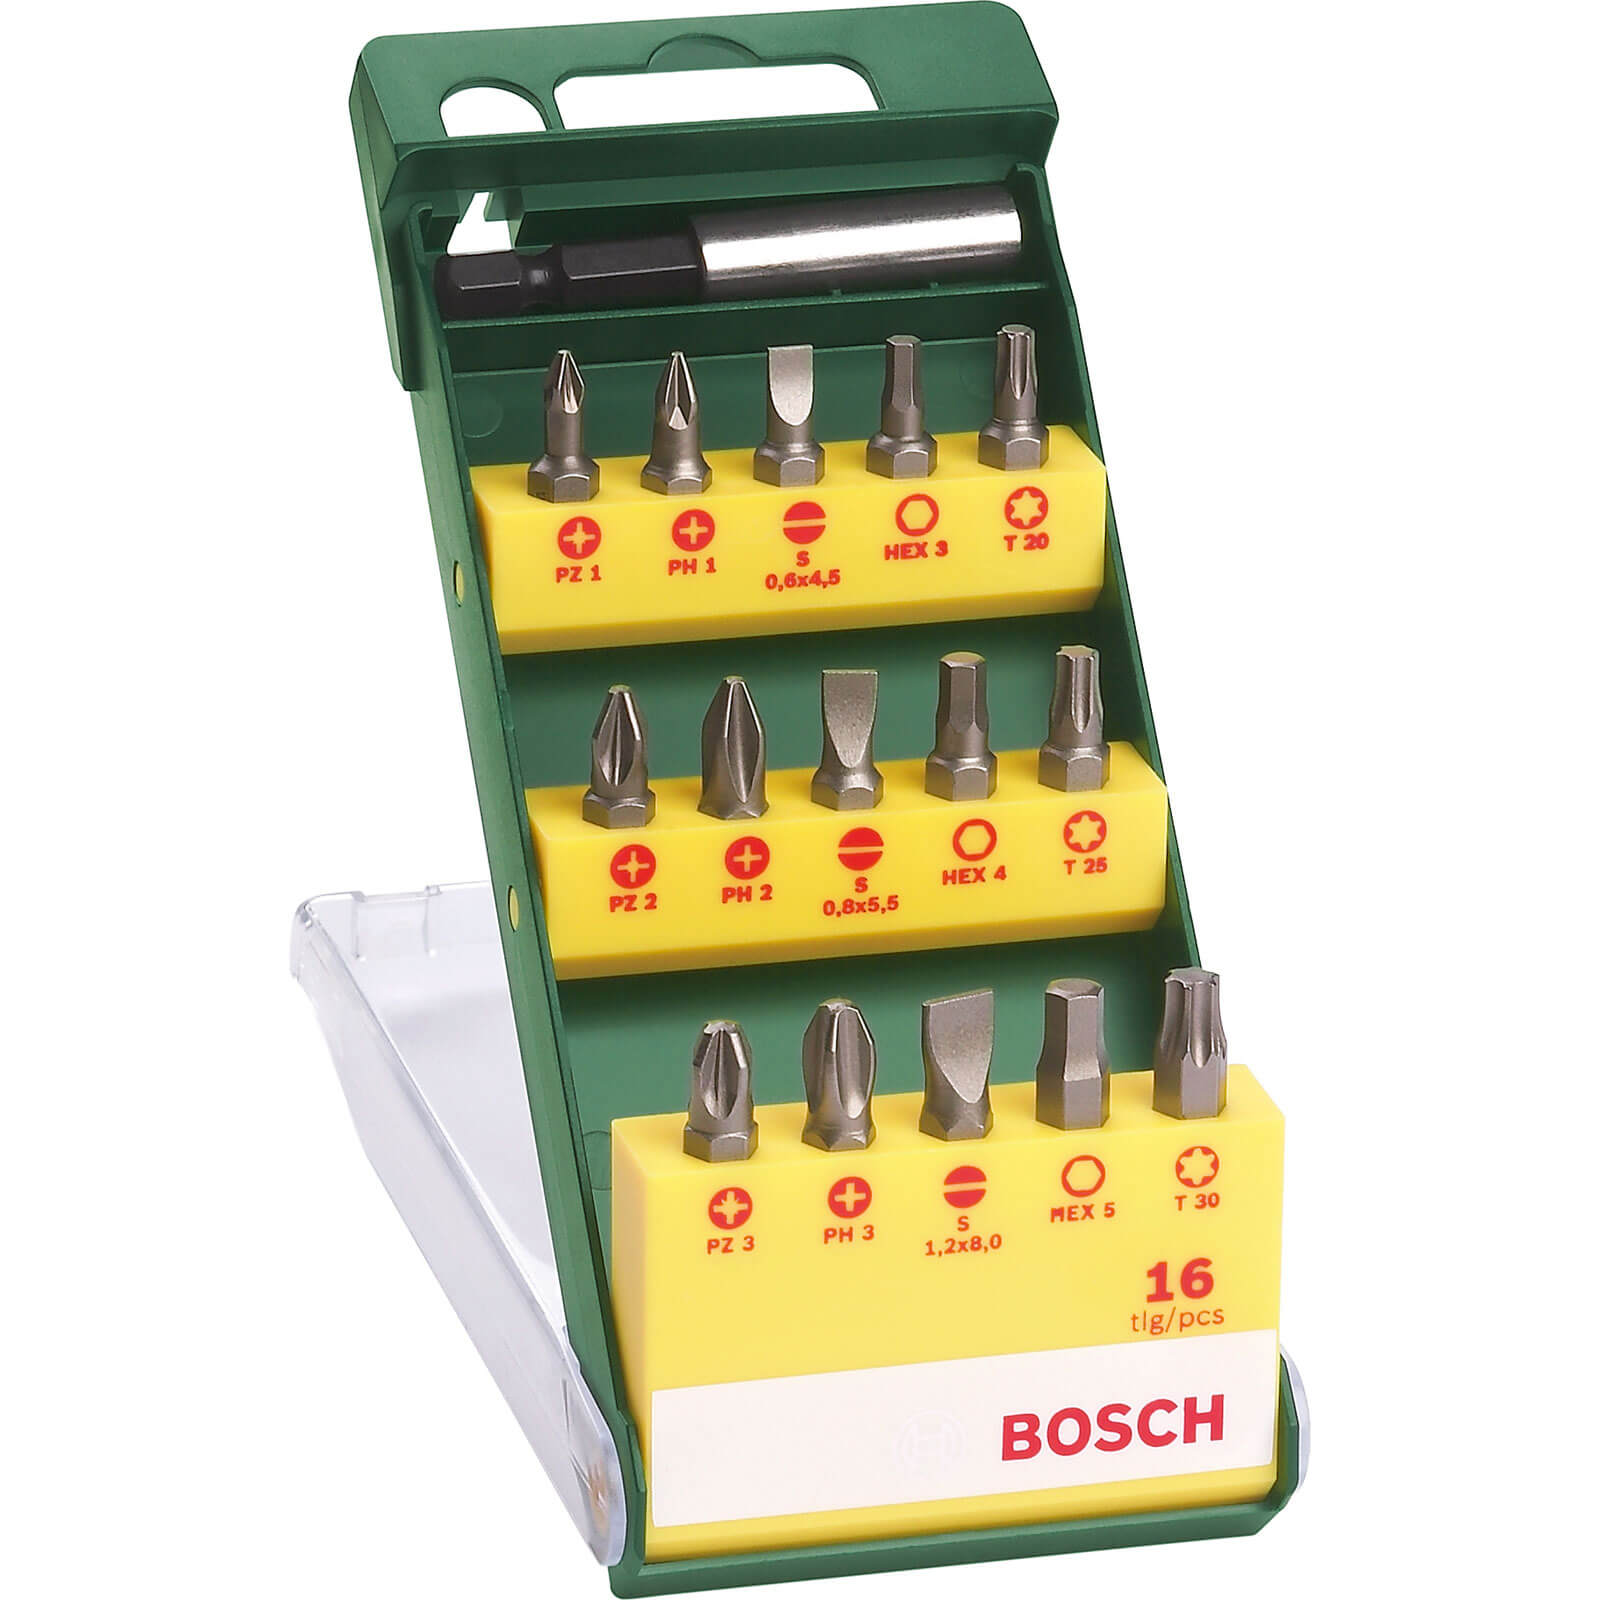 Photo of Bosch 16 Piece Mixed Screwdriver Bit Set